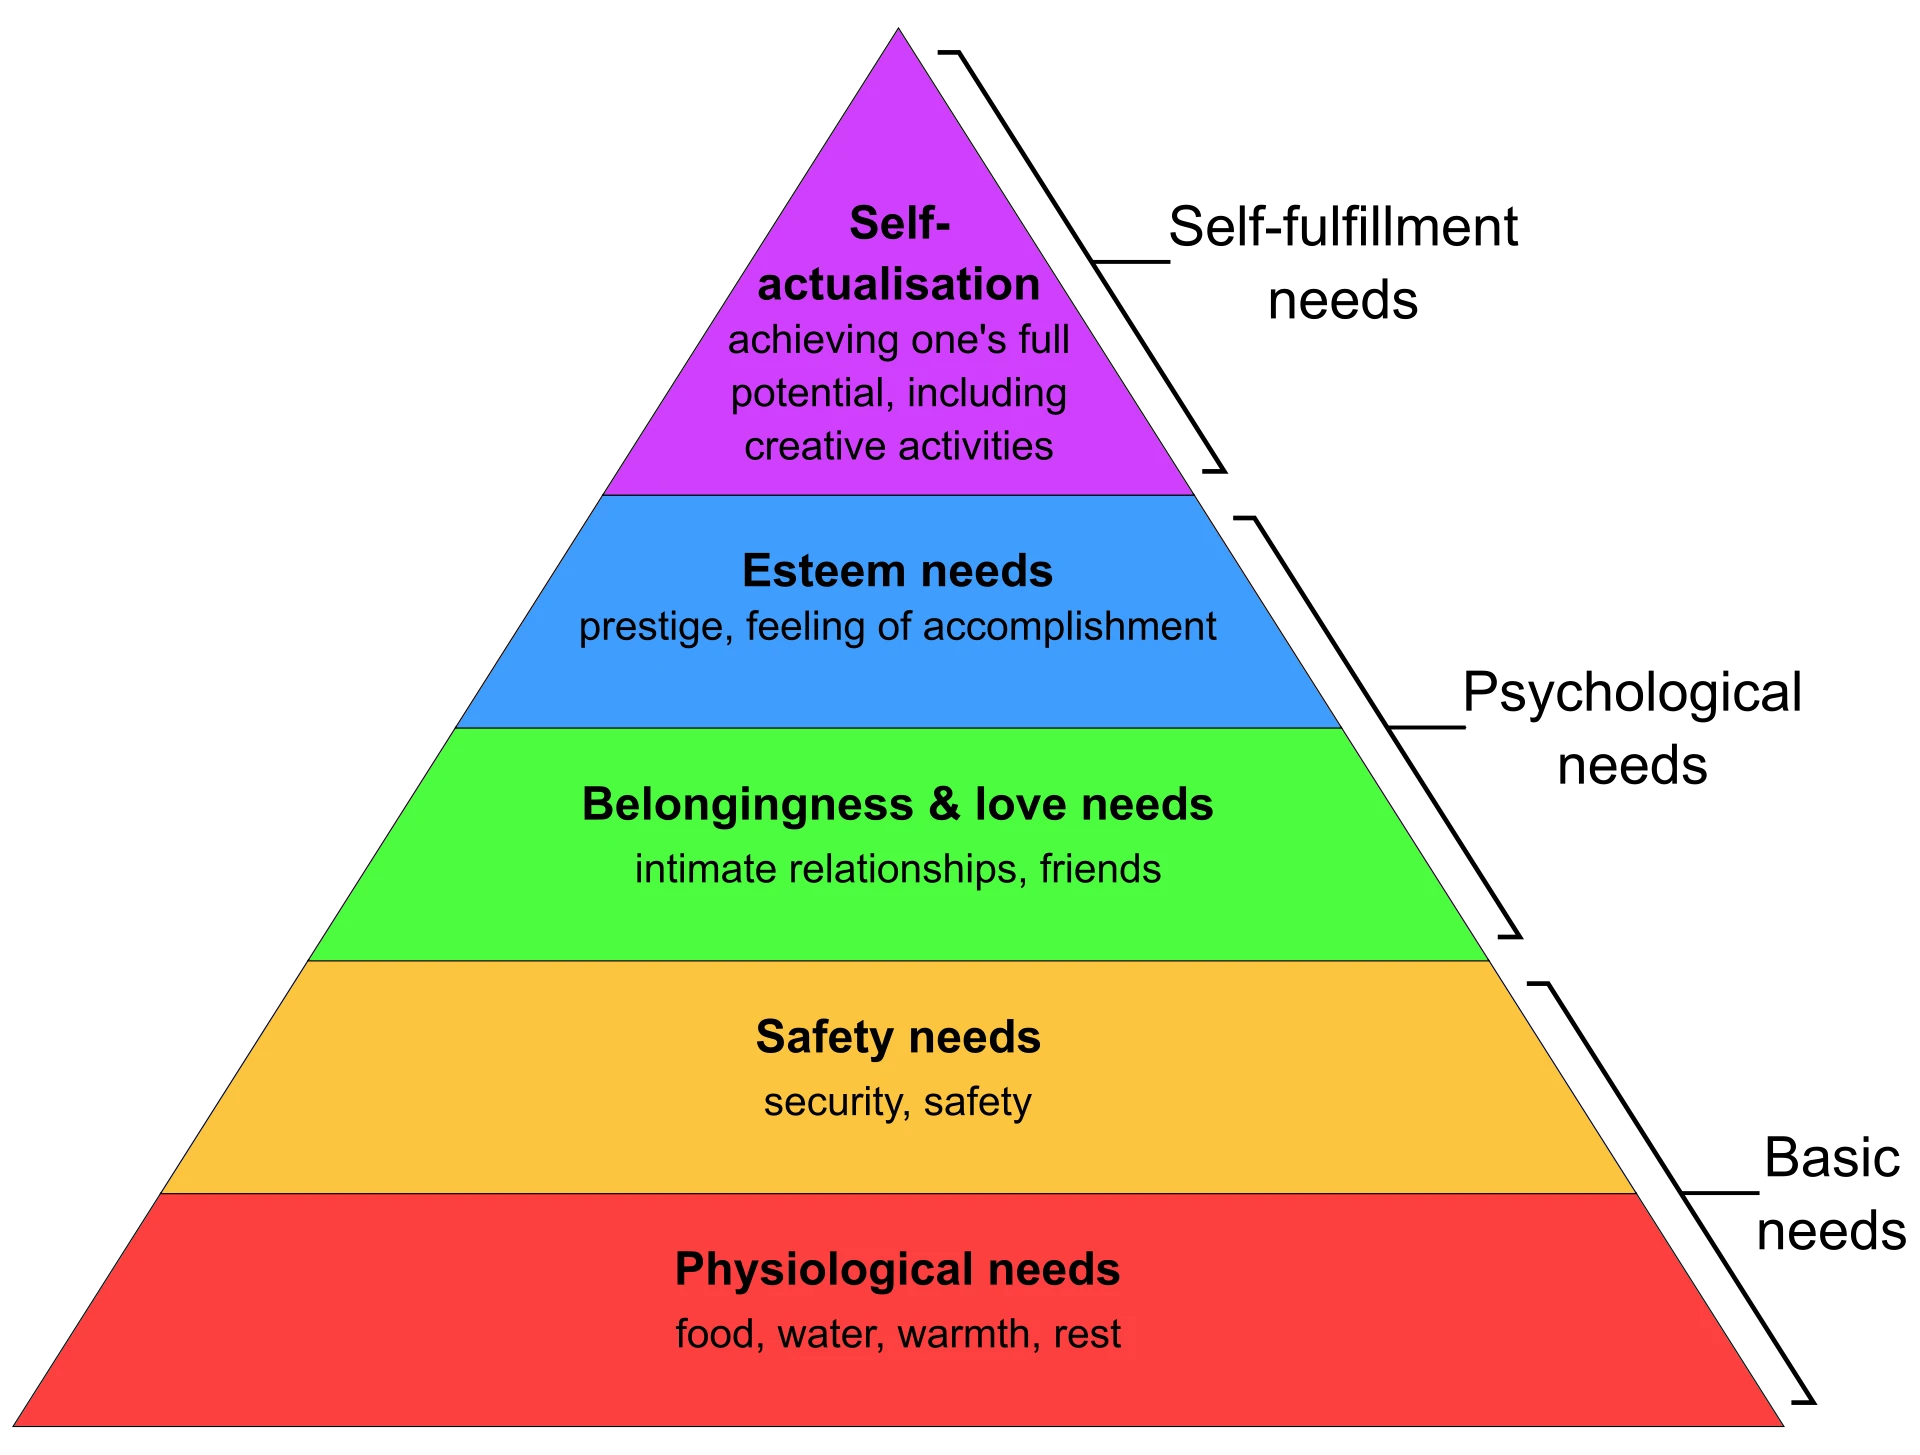 Maslov's pyramid